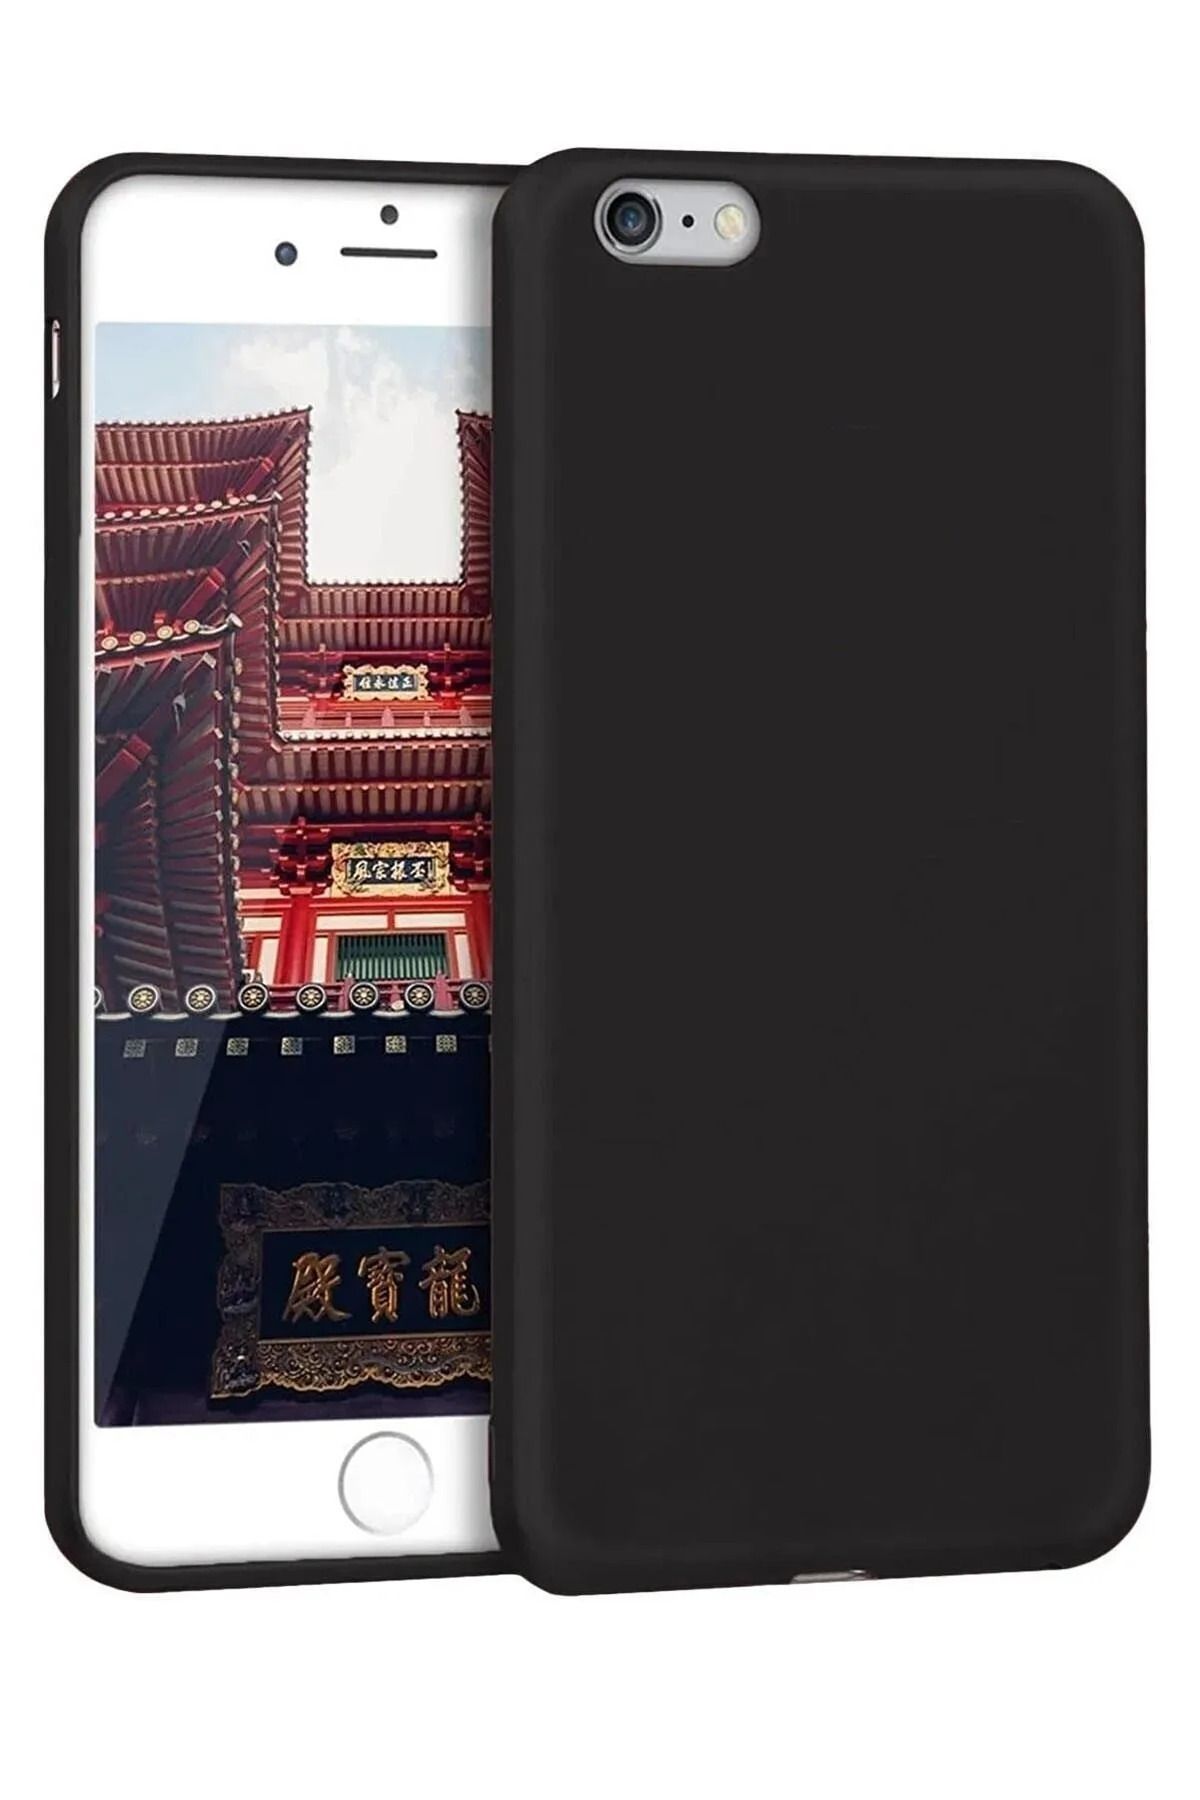 Fibaks Apple Iphone 5s Kılıf Yumuşak Dokulu Kamera Korumalı Ince Mat Renkli Premium Silikon Kapak